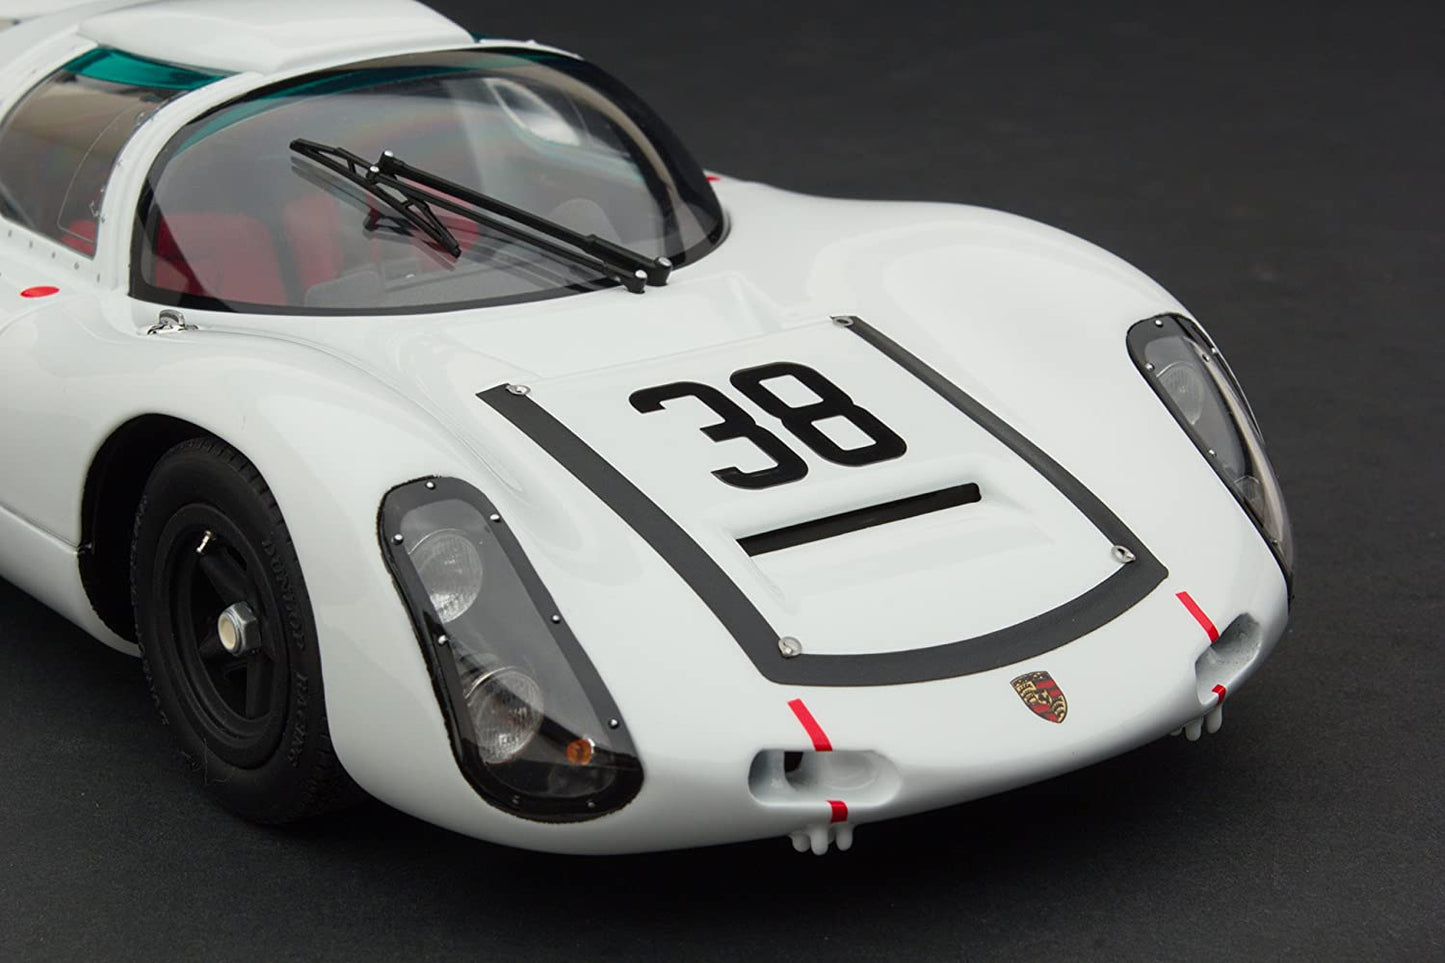 EXOTO 1:18 1967 Porsche 910 #38 Le Mans 24 Hours Jochen Neerpasch, Rolf Stommelen MTB00062C